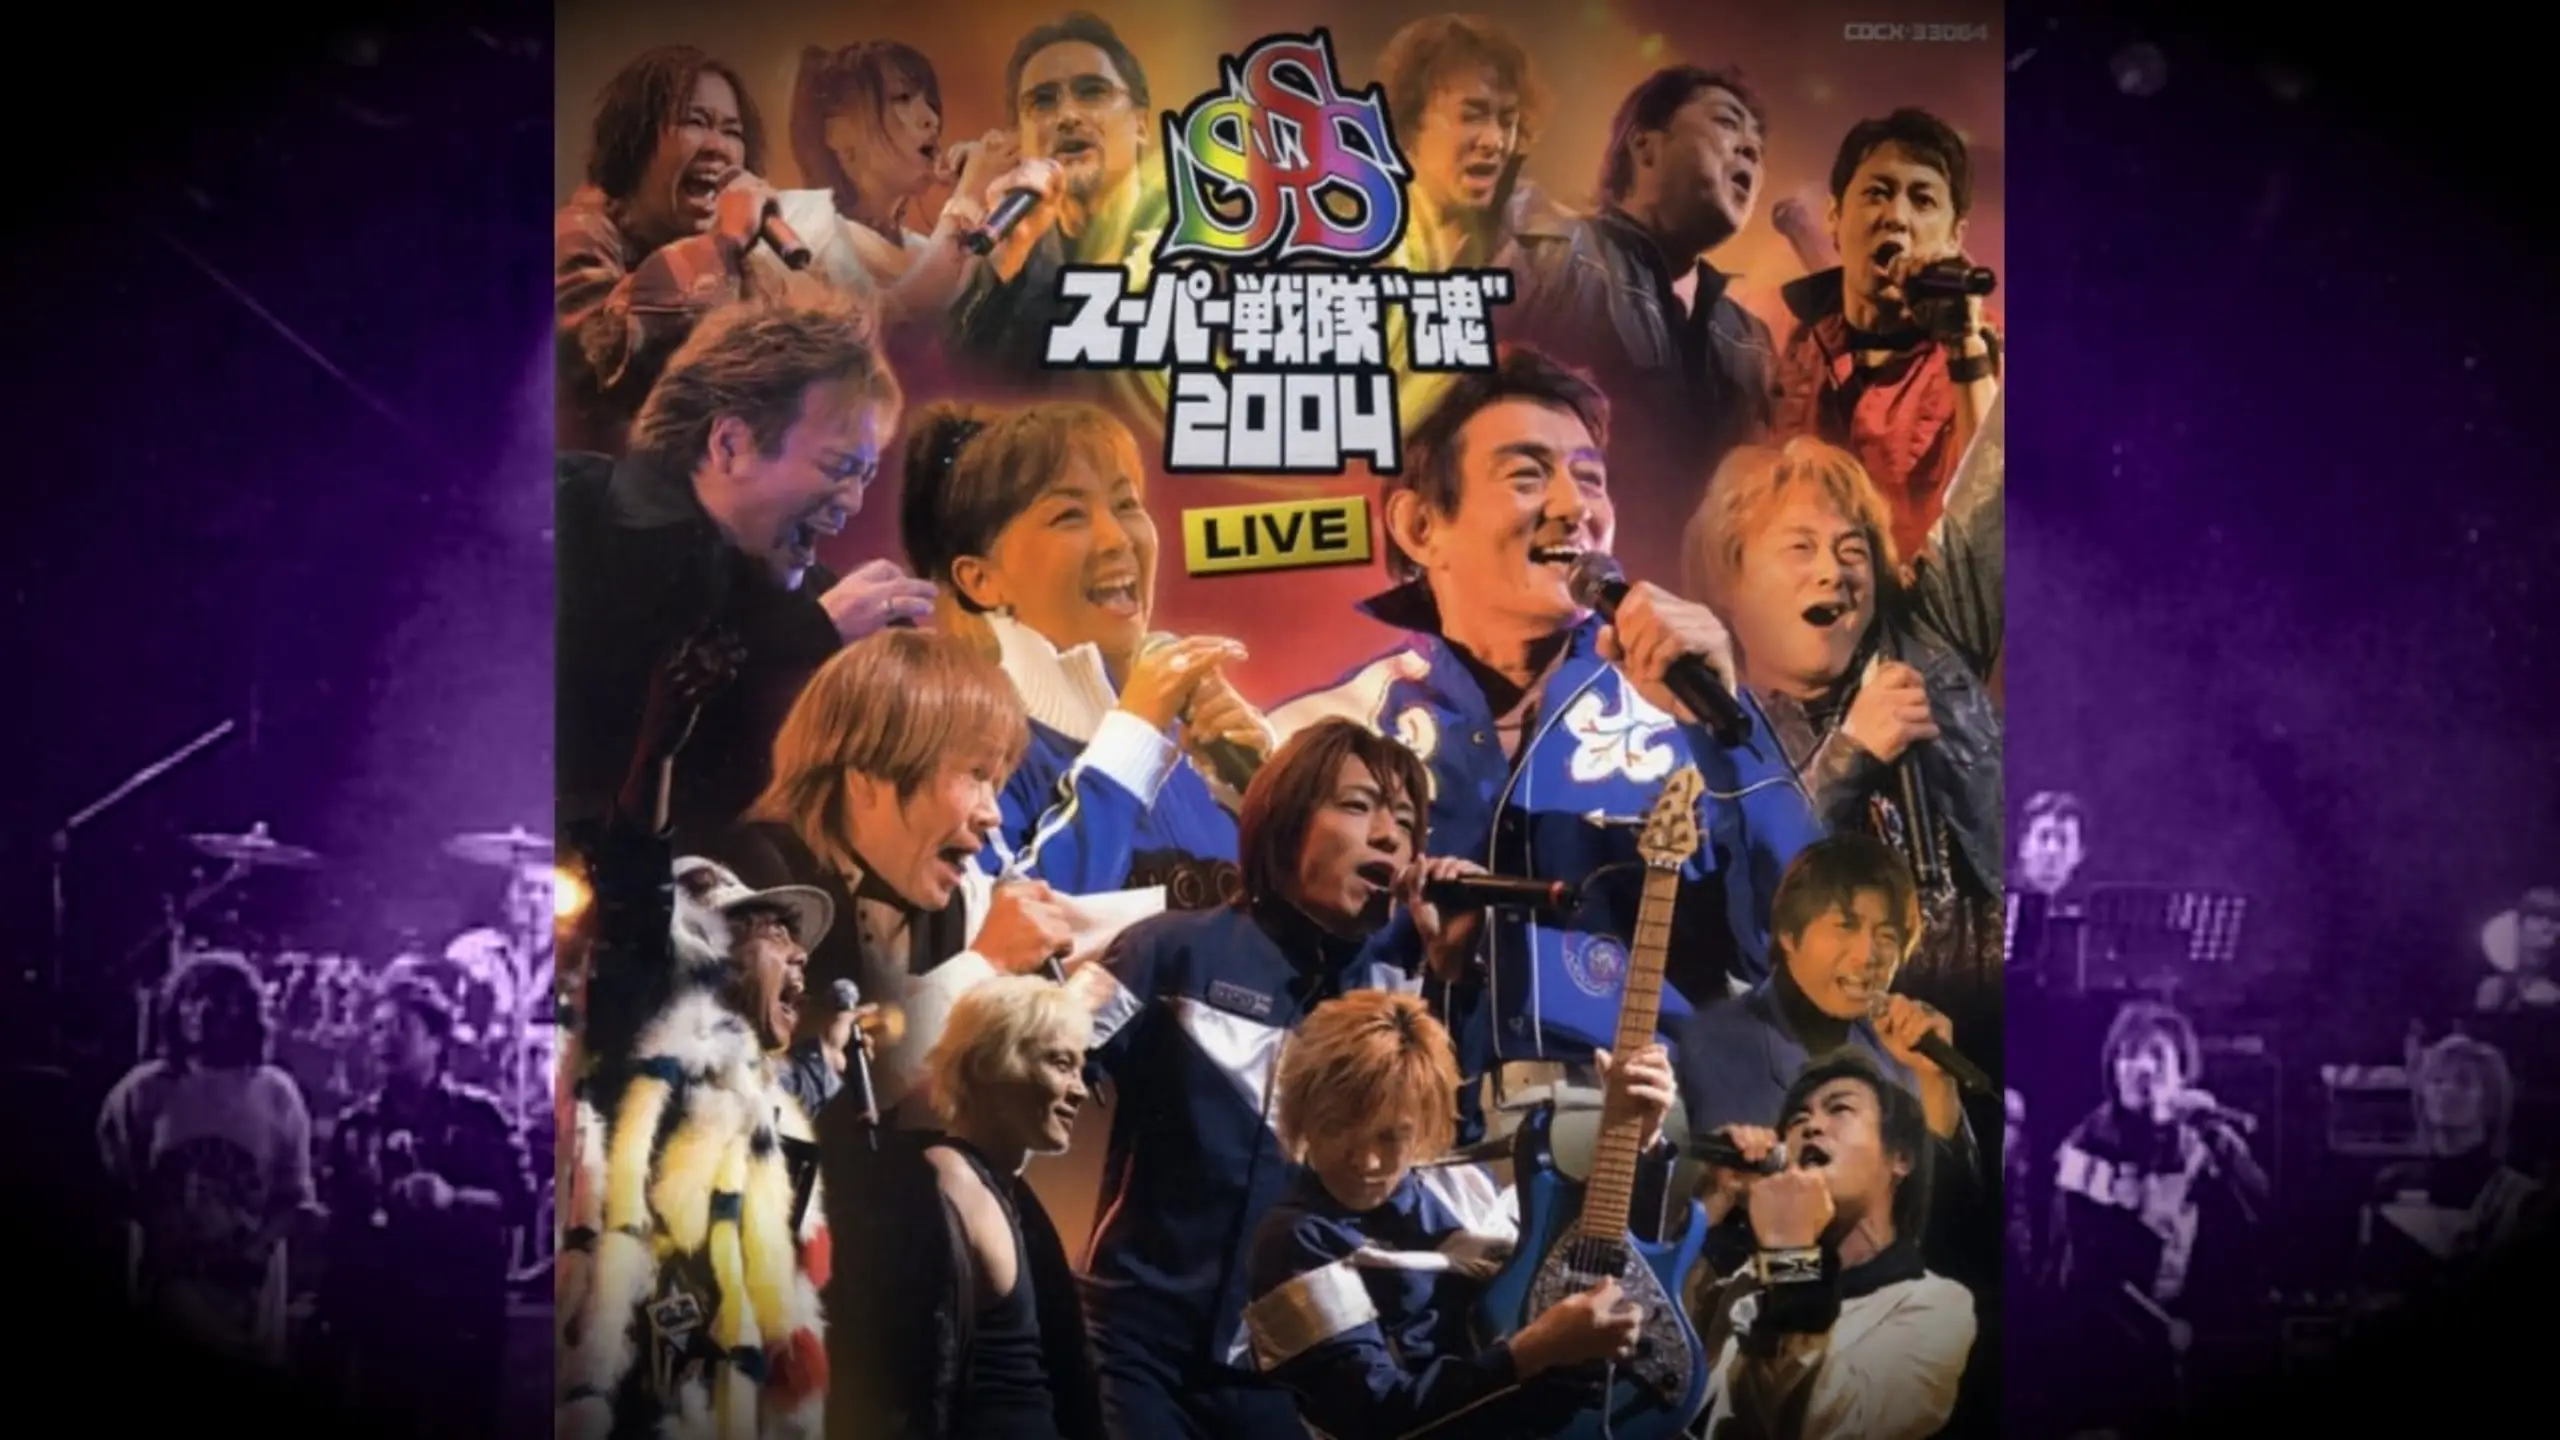 スーパー戦隊 "魂" 2004 LIVE